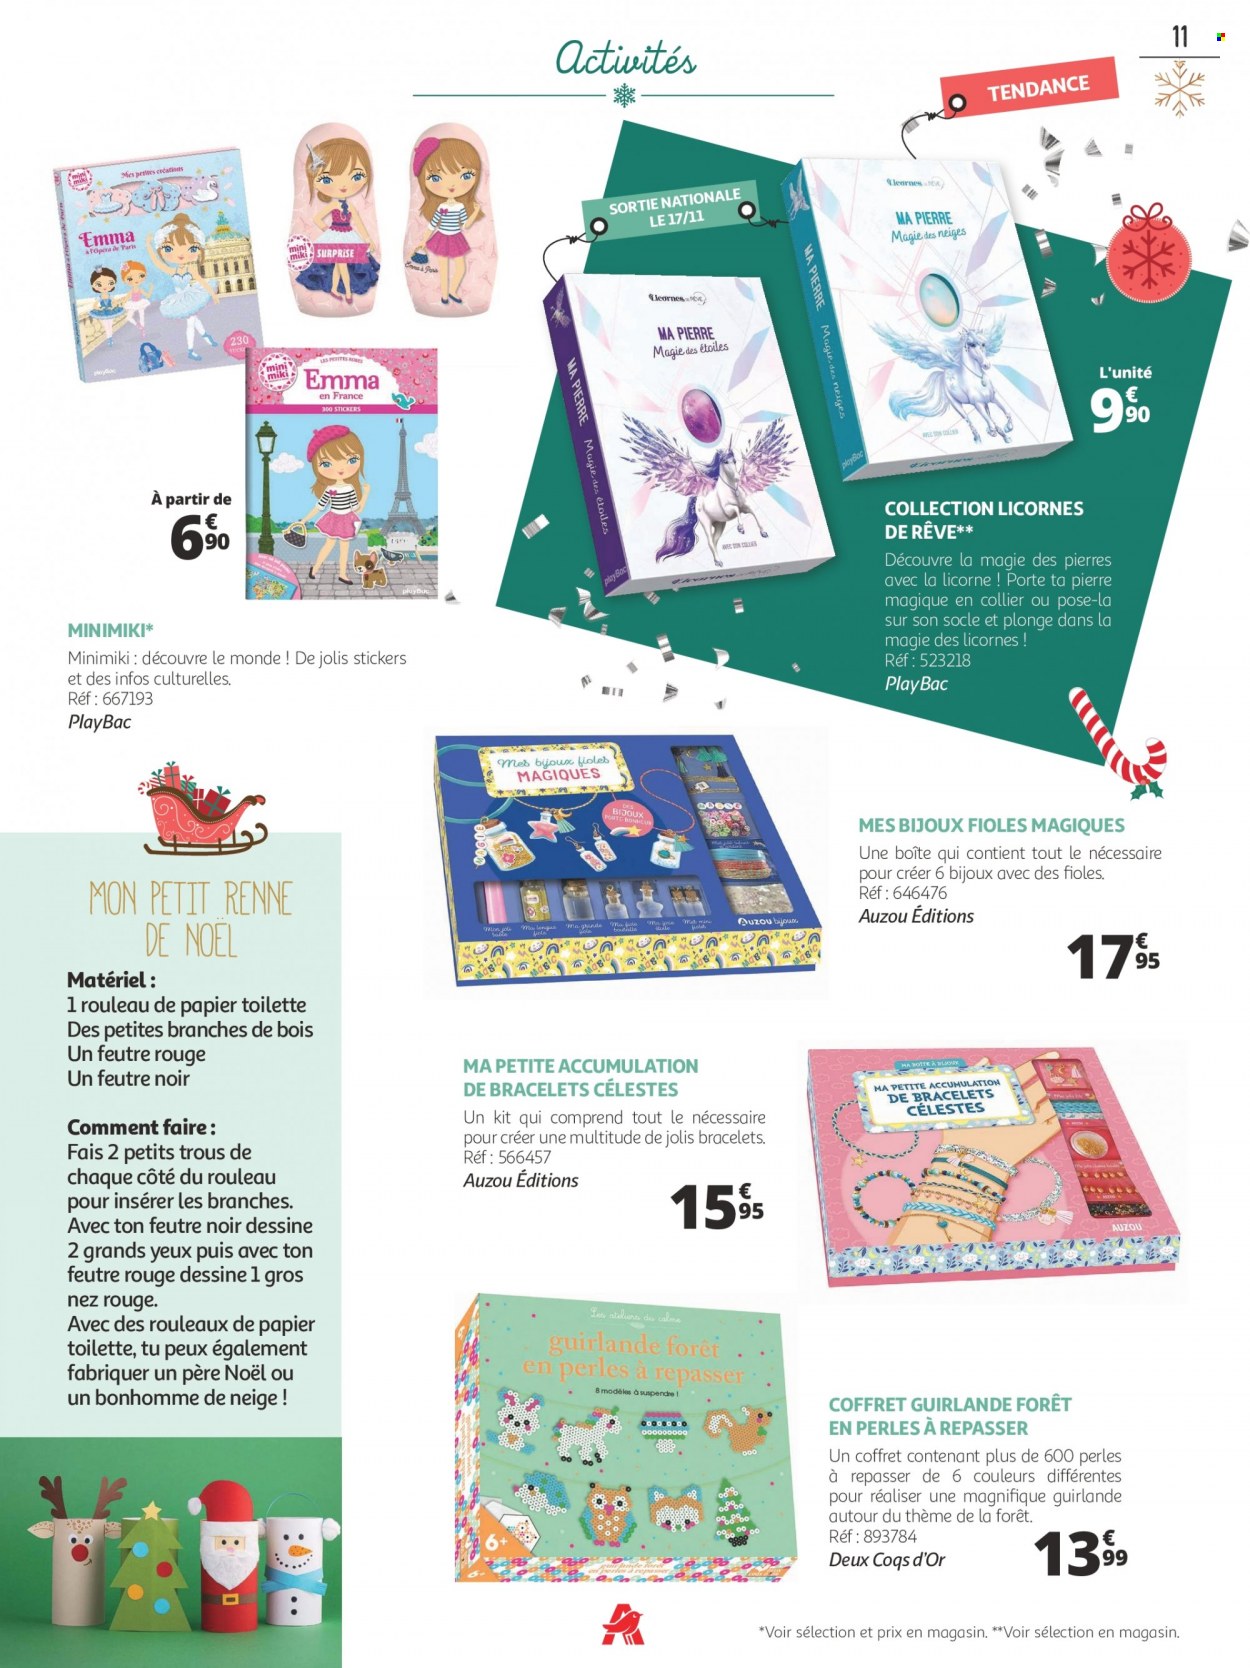 thumbnail - Catalogue Auchan - 08/11/2021 - 24/12/2021 - Produits soldés - père noël, papier toilette, bonhomme de neige, feutre, guirlande, licorne, bijouterie, bracelet. Page 11.